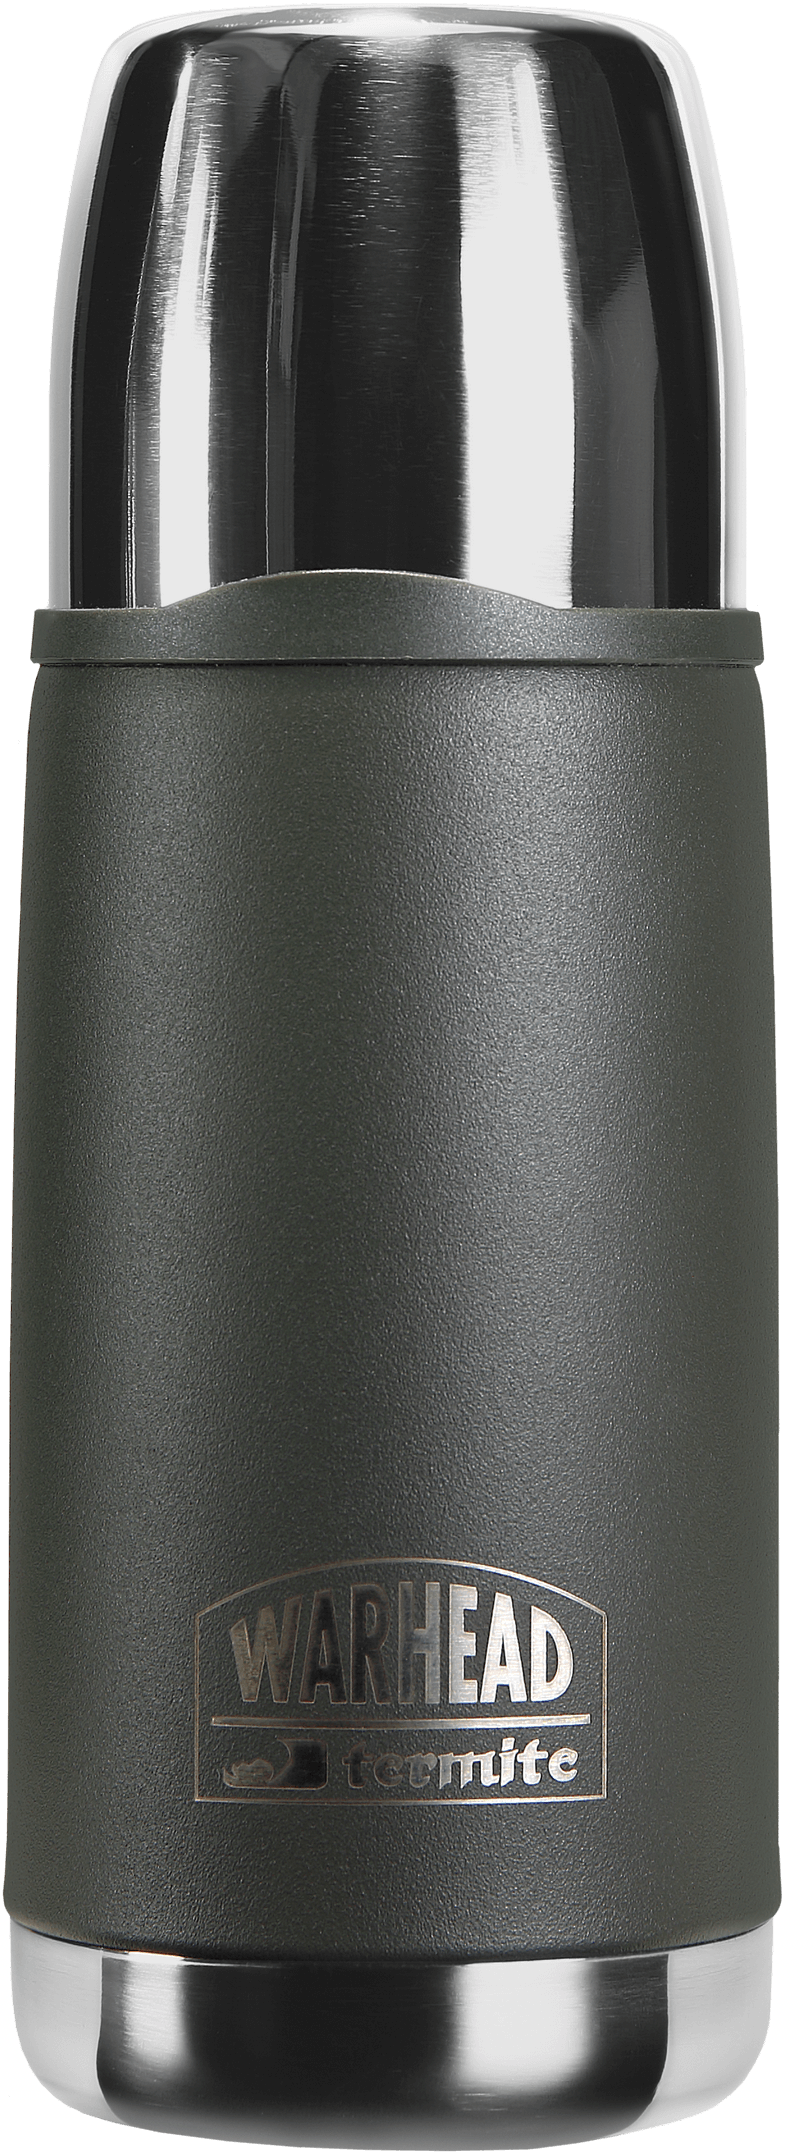 termite-warhead-035L-2023-Vm